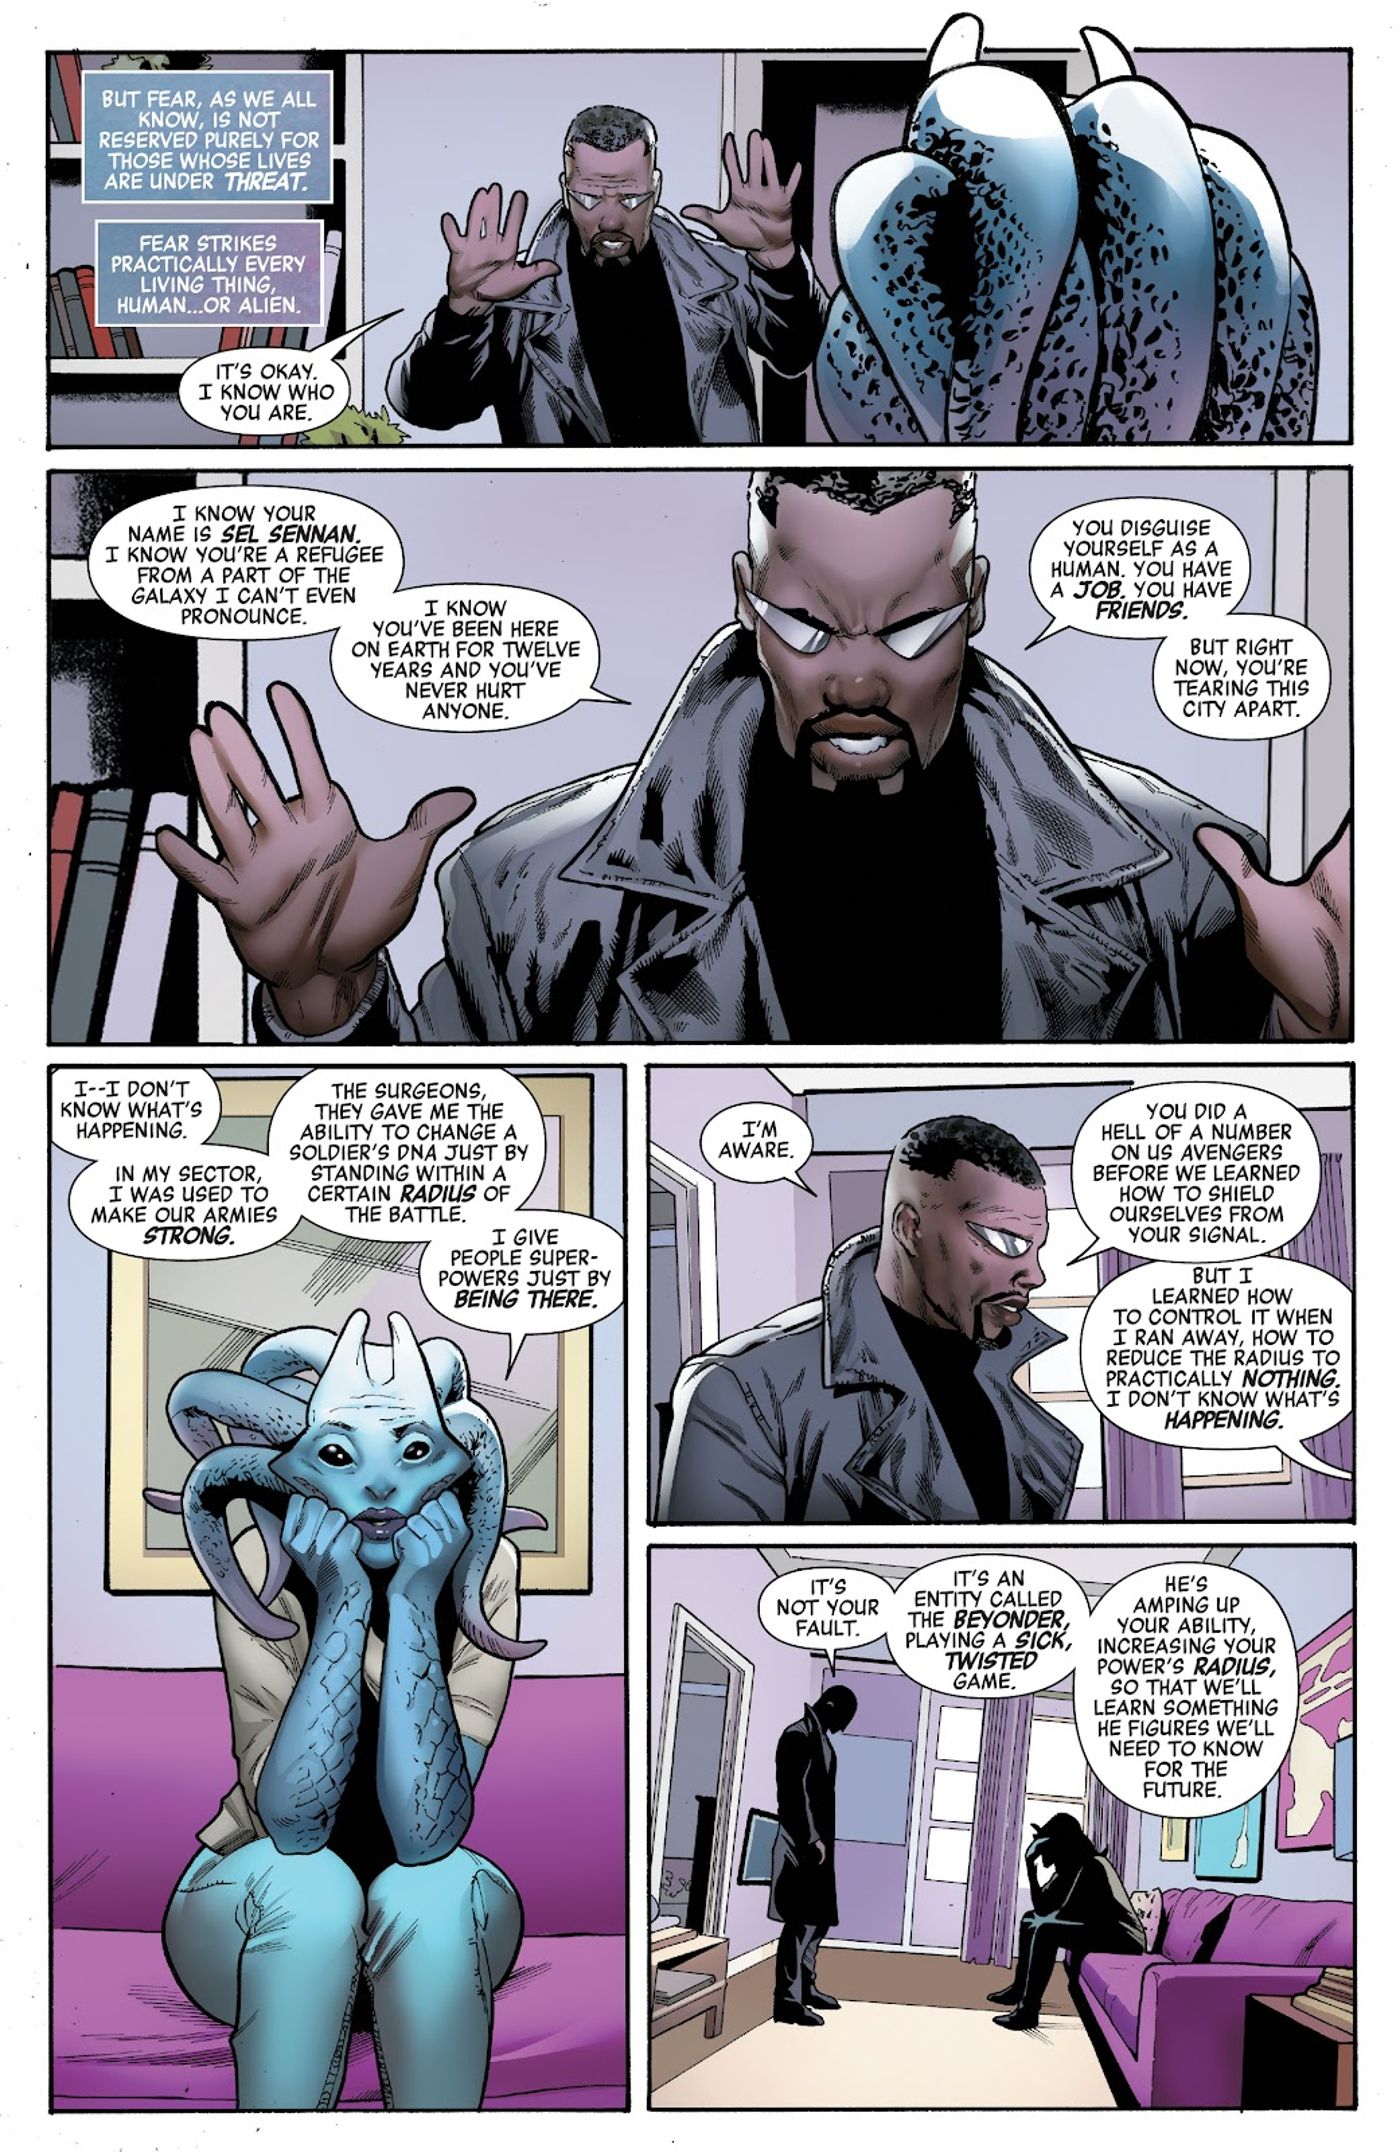 Blade speaks with Sel Sennan in Avengers Beyond